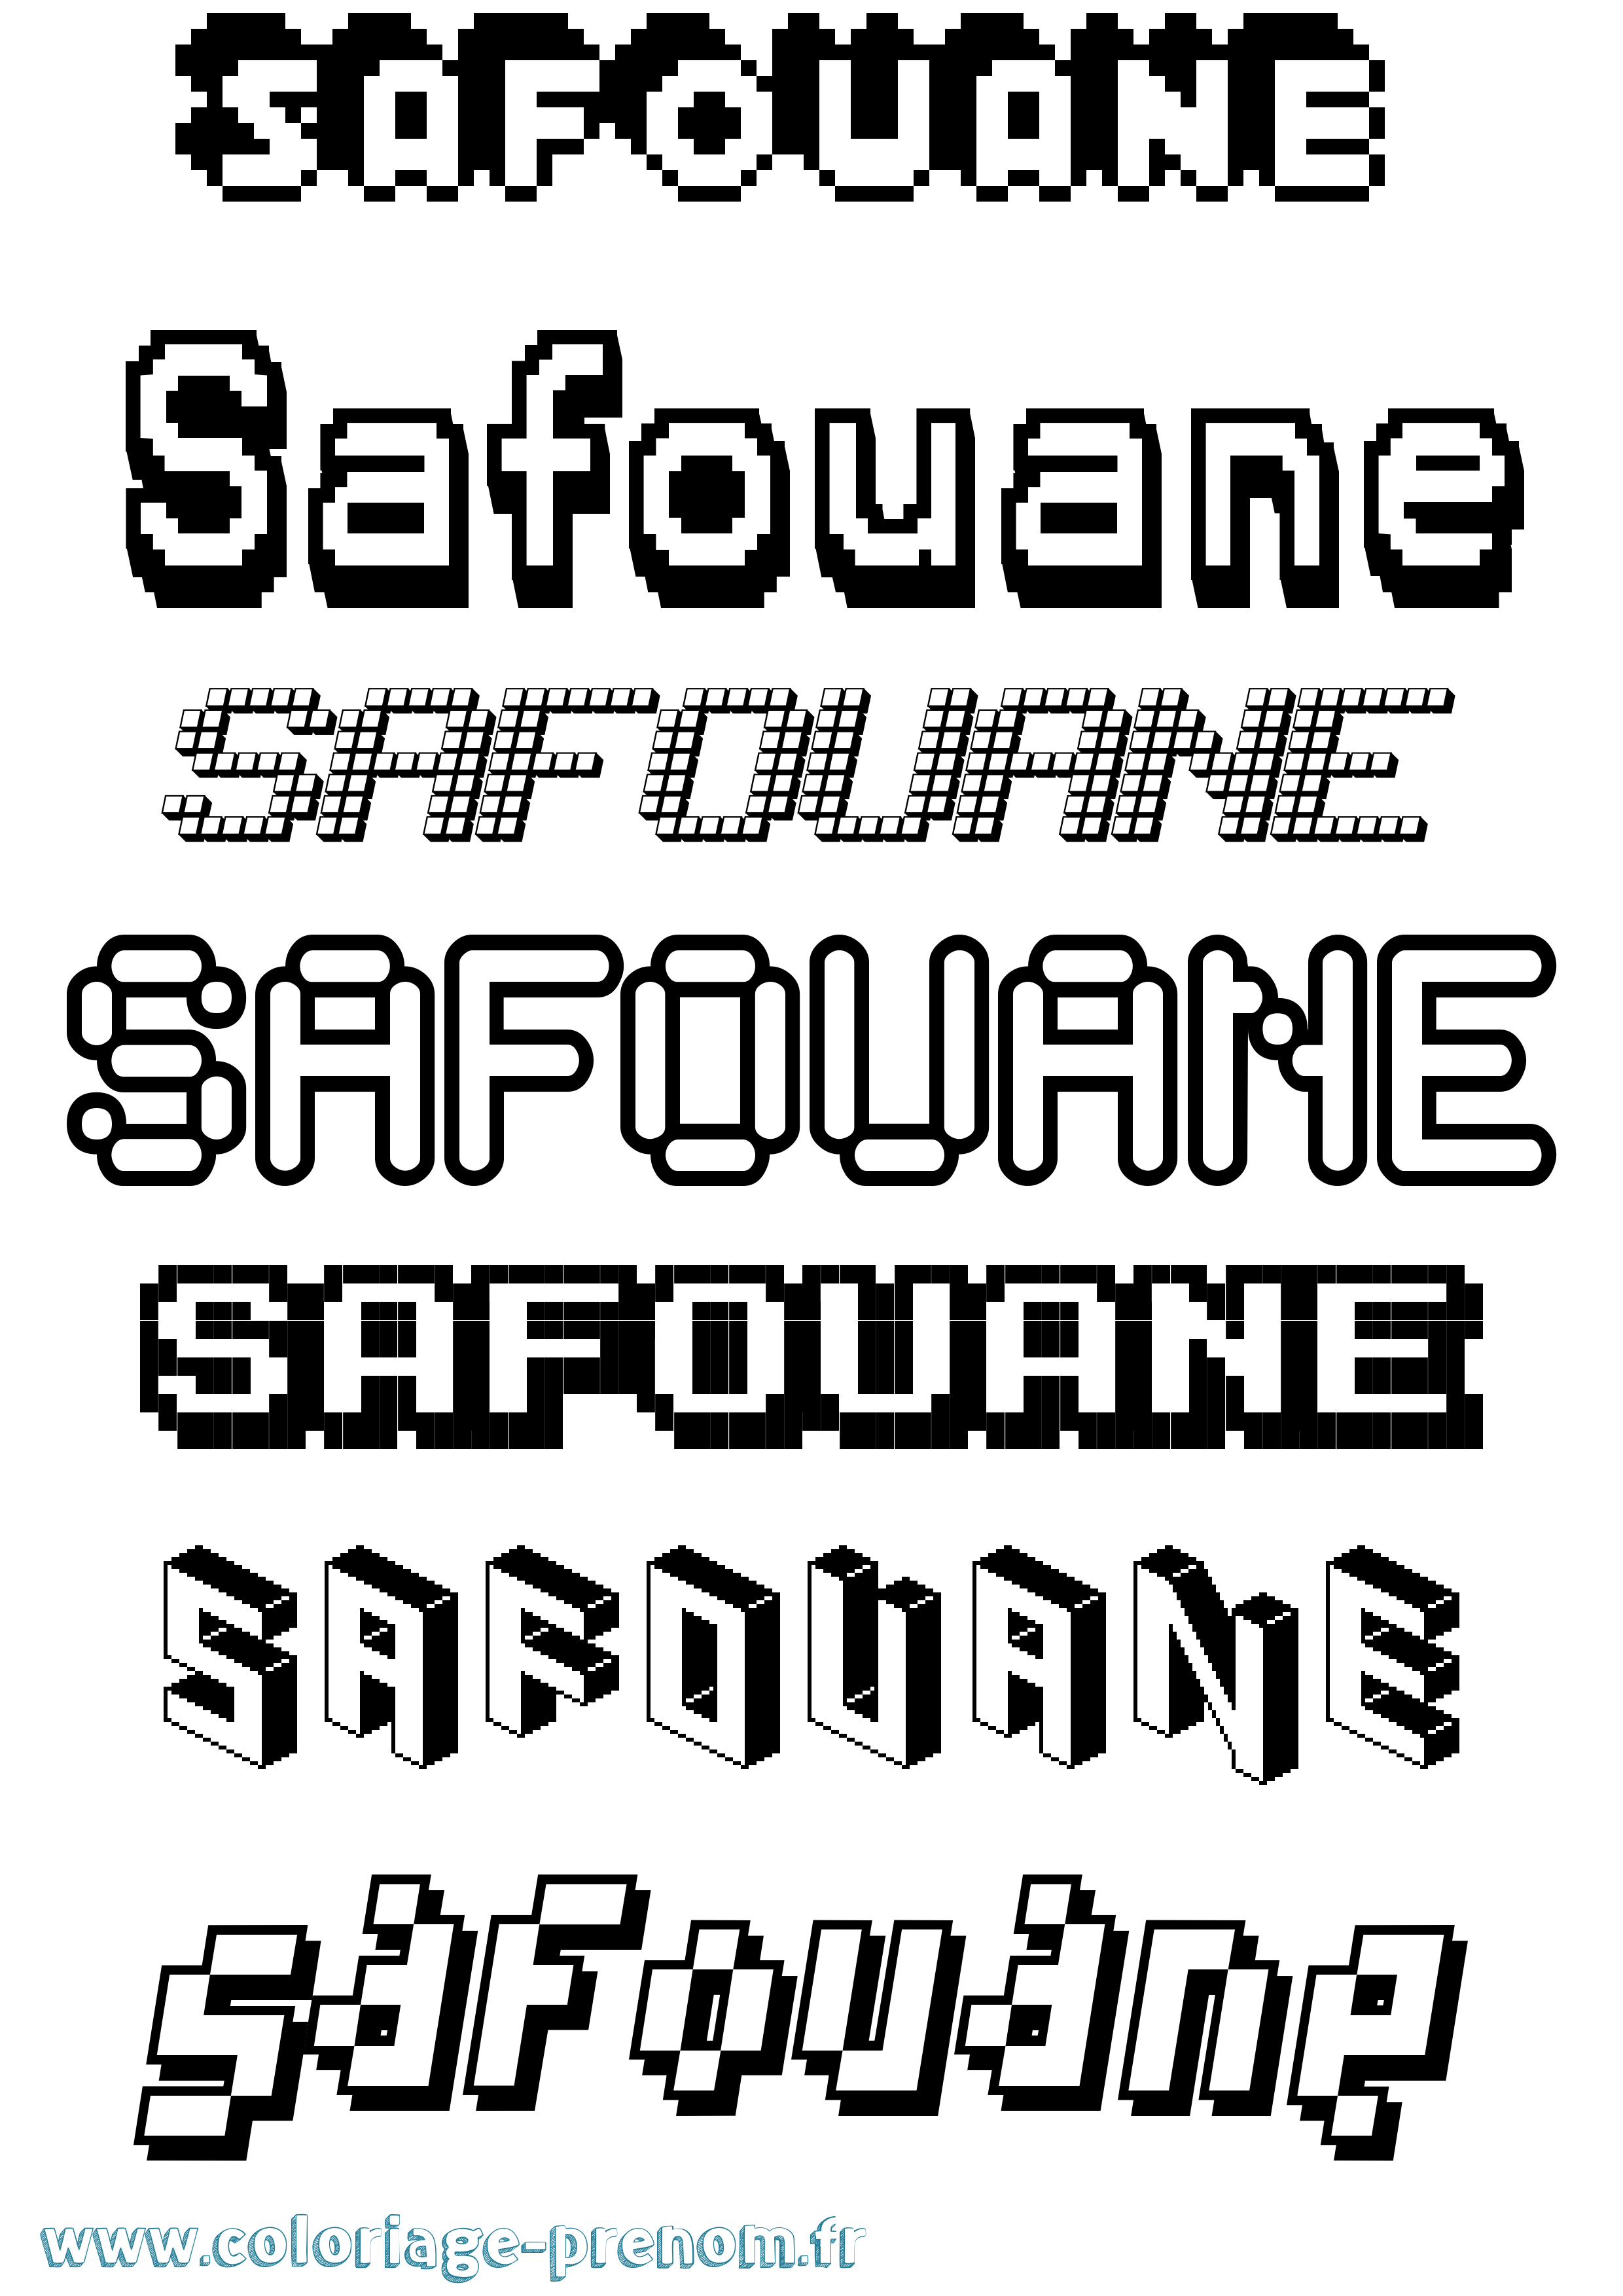 Coloriage prénom Safouane Pixel